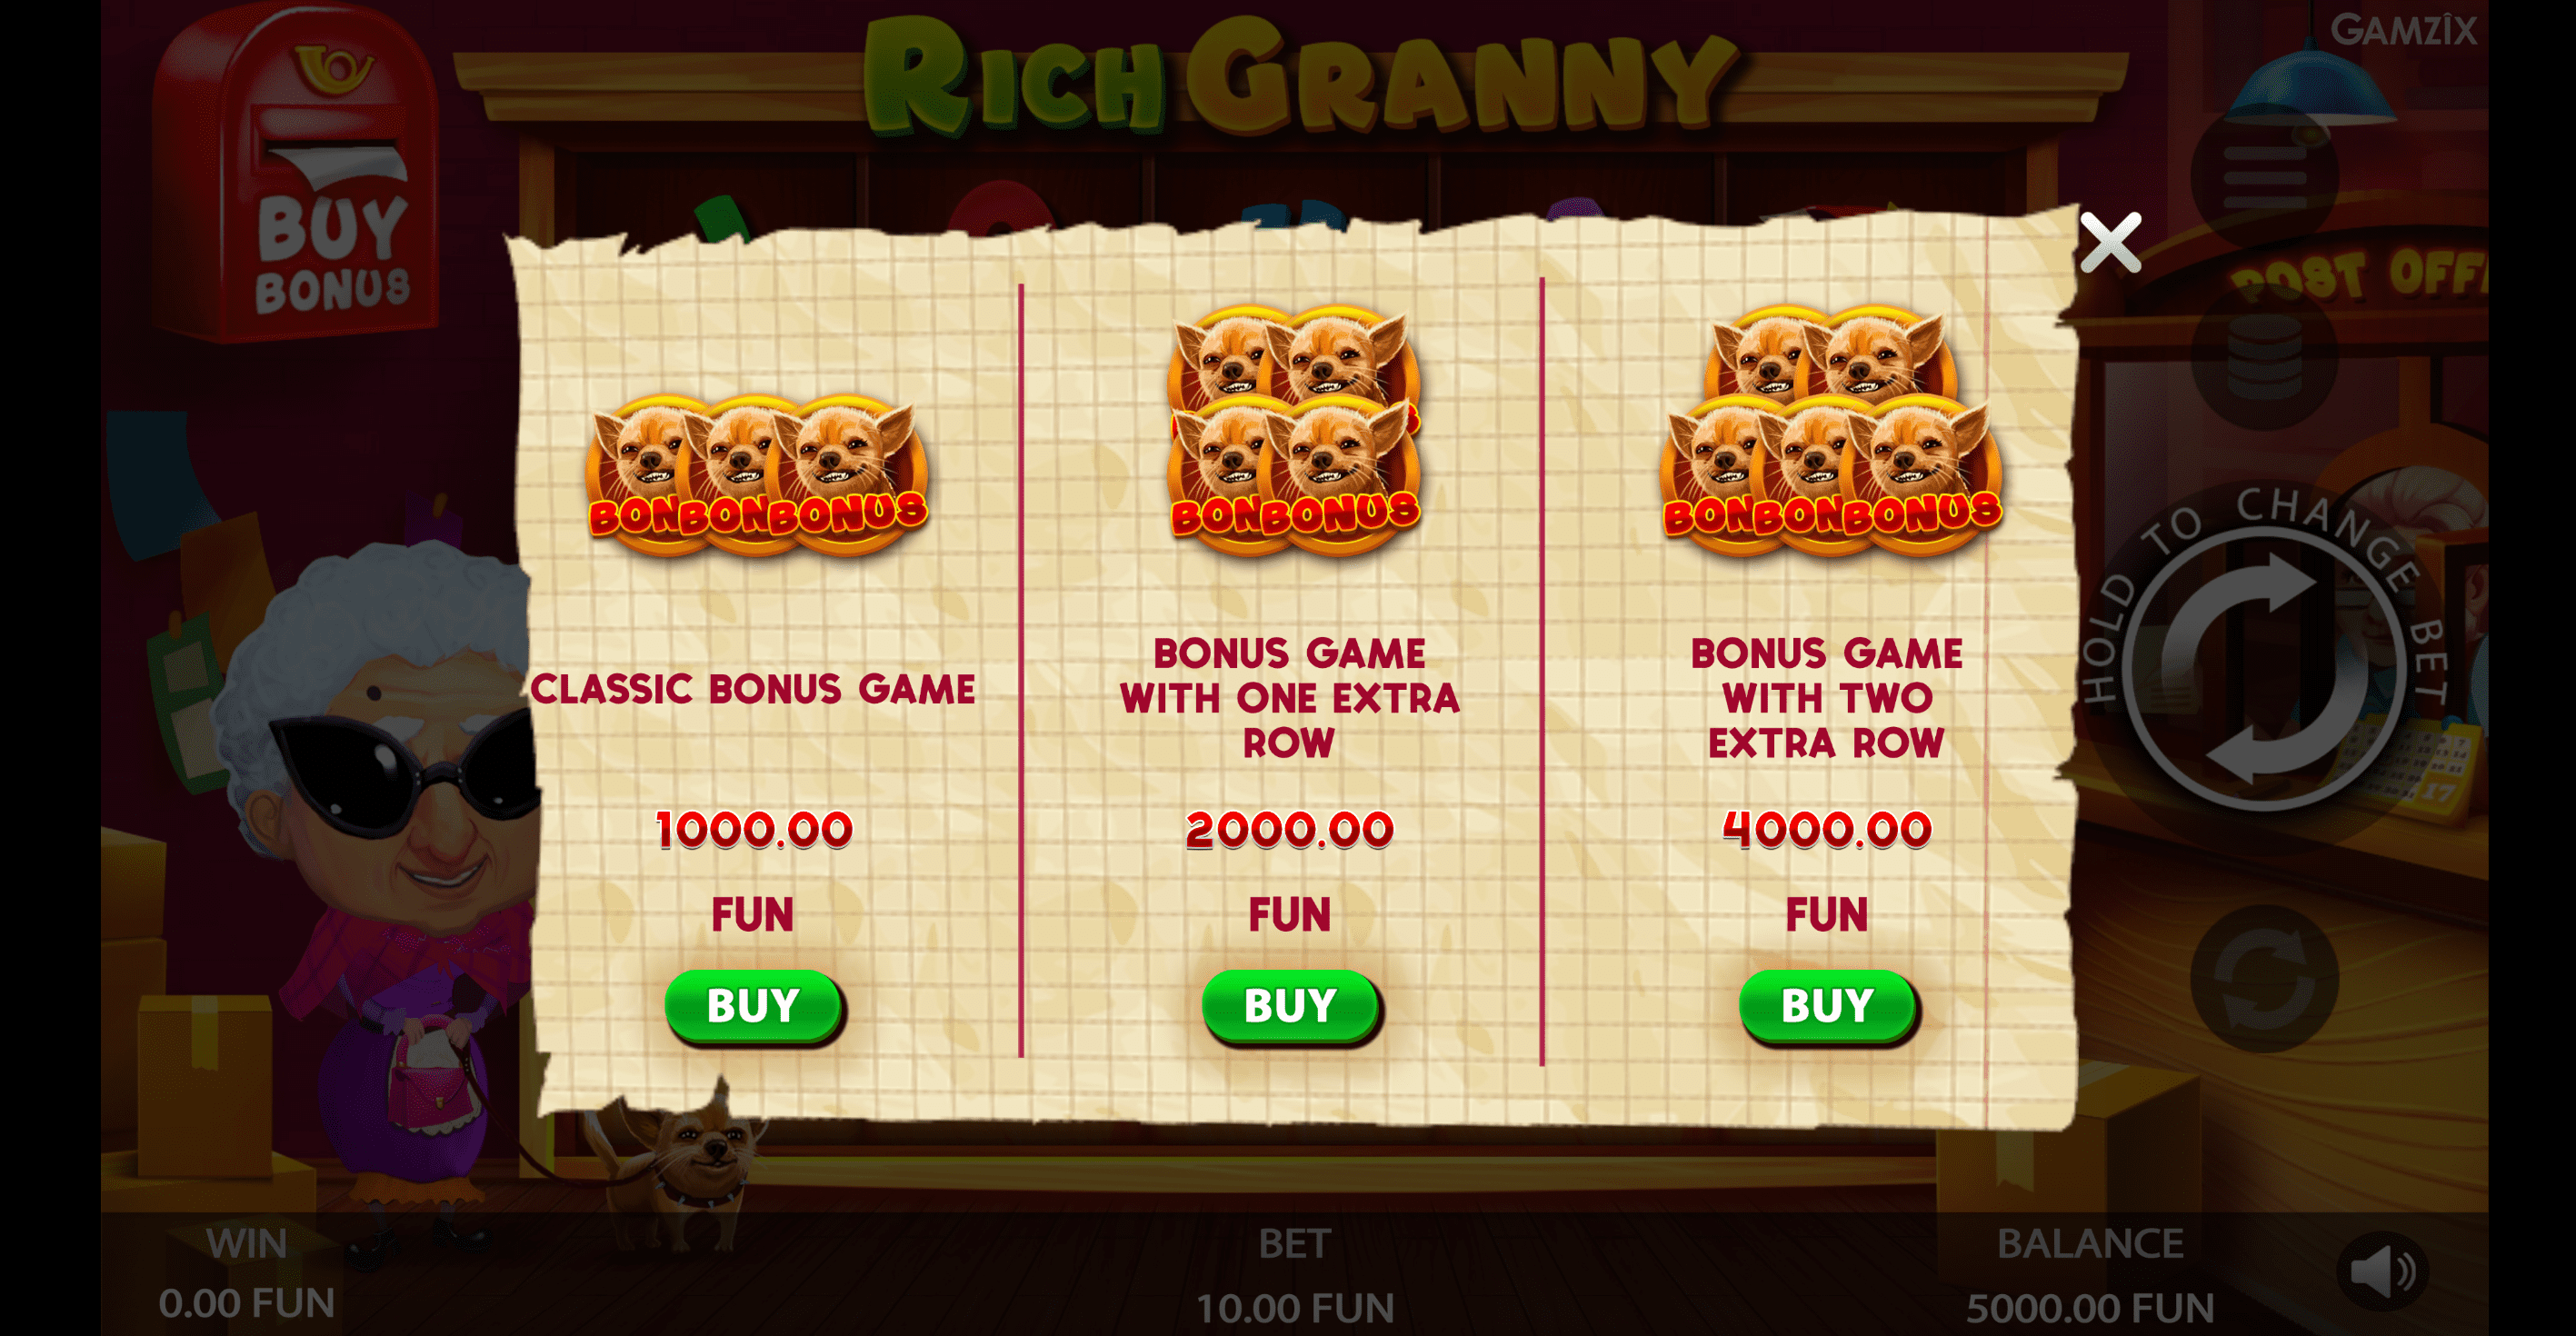 Rich Granny proceso de juego